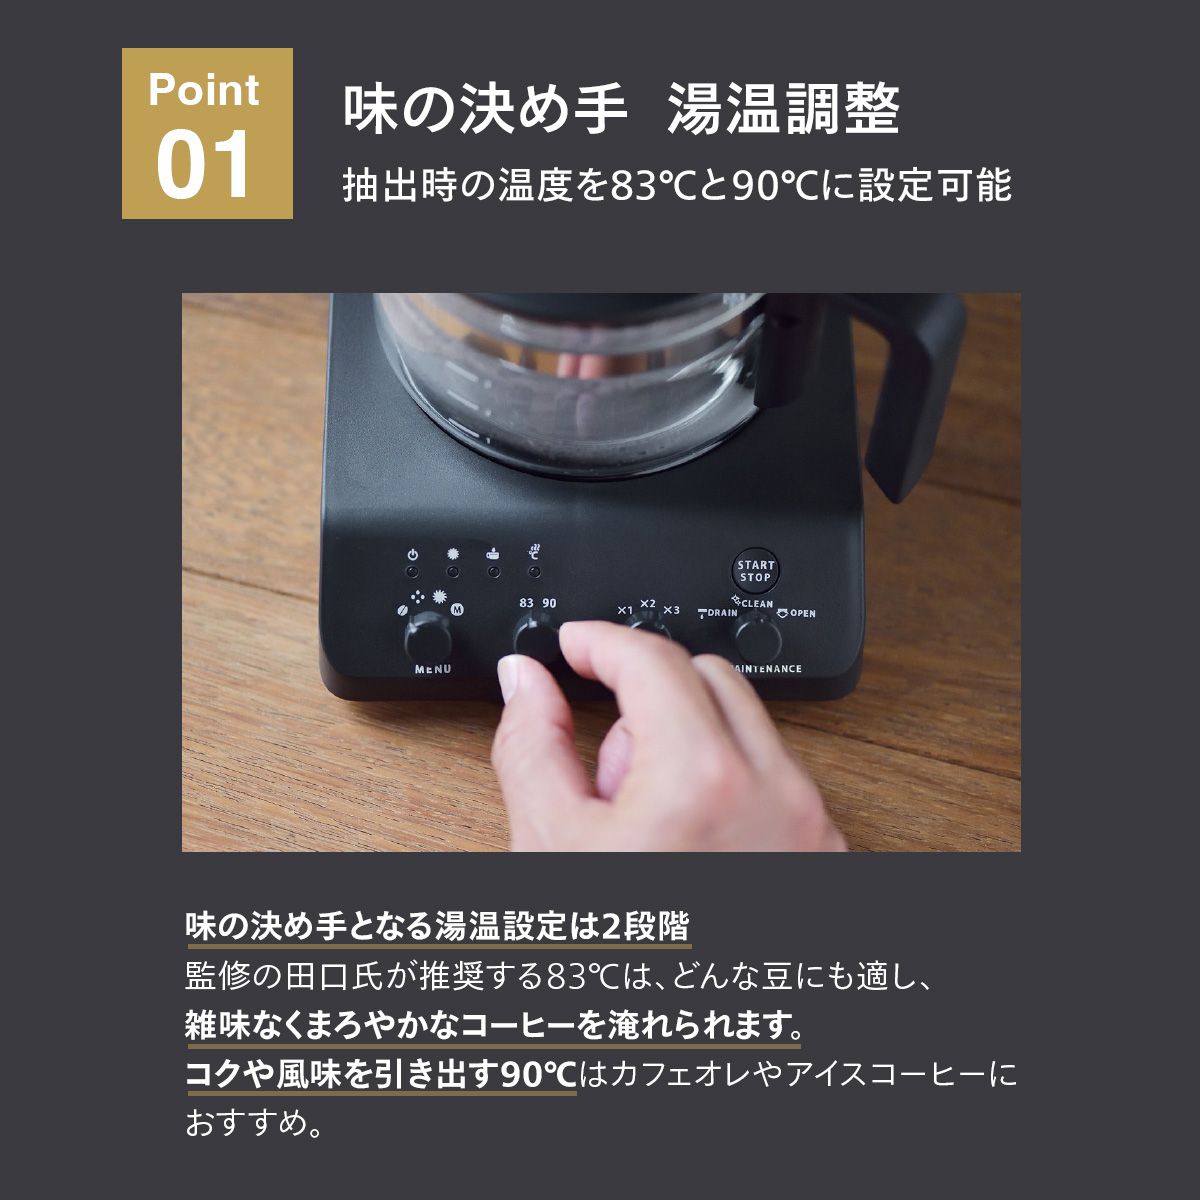 ツインバード 全自動コーヒーメーカー 3杯用 カフェバッハオリジナルフィルターセット CM-D457B-A03 日本製 ブラック